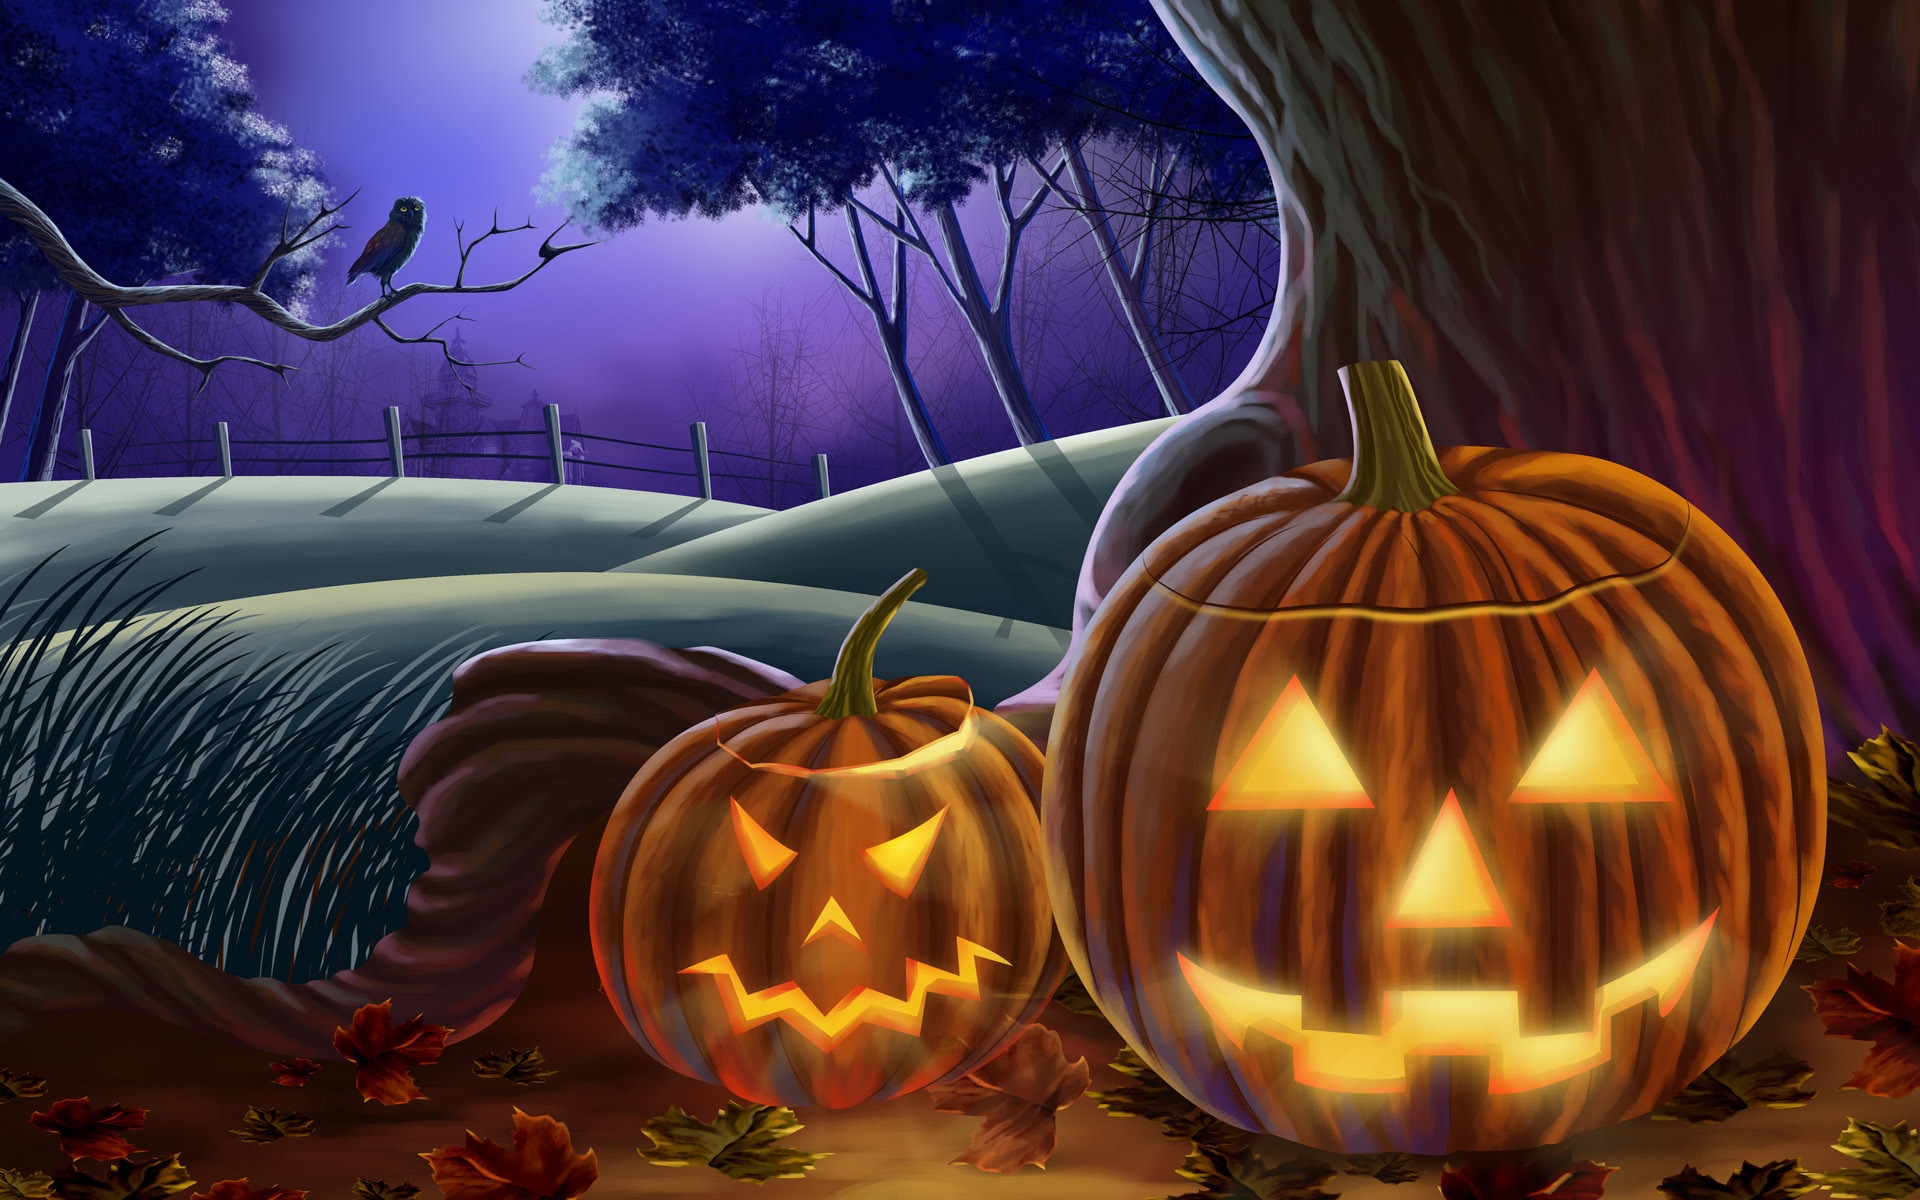 Illuminated Pumpkins for Halloween for 1920 x 1200 widescreen resolution